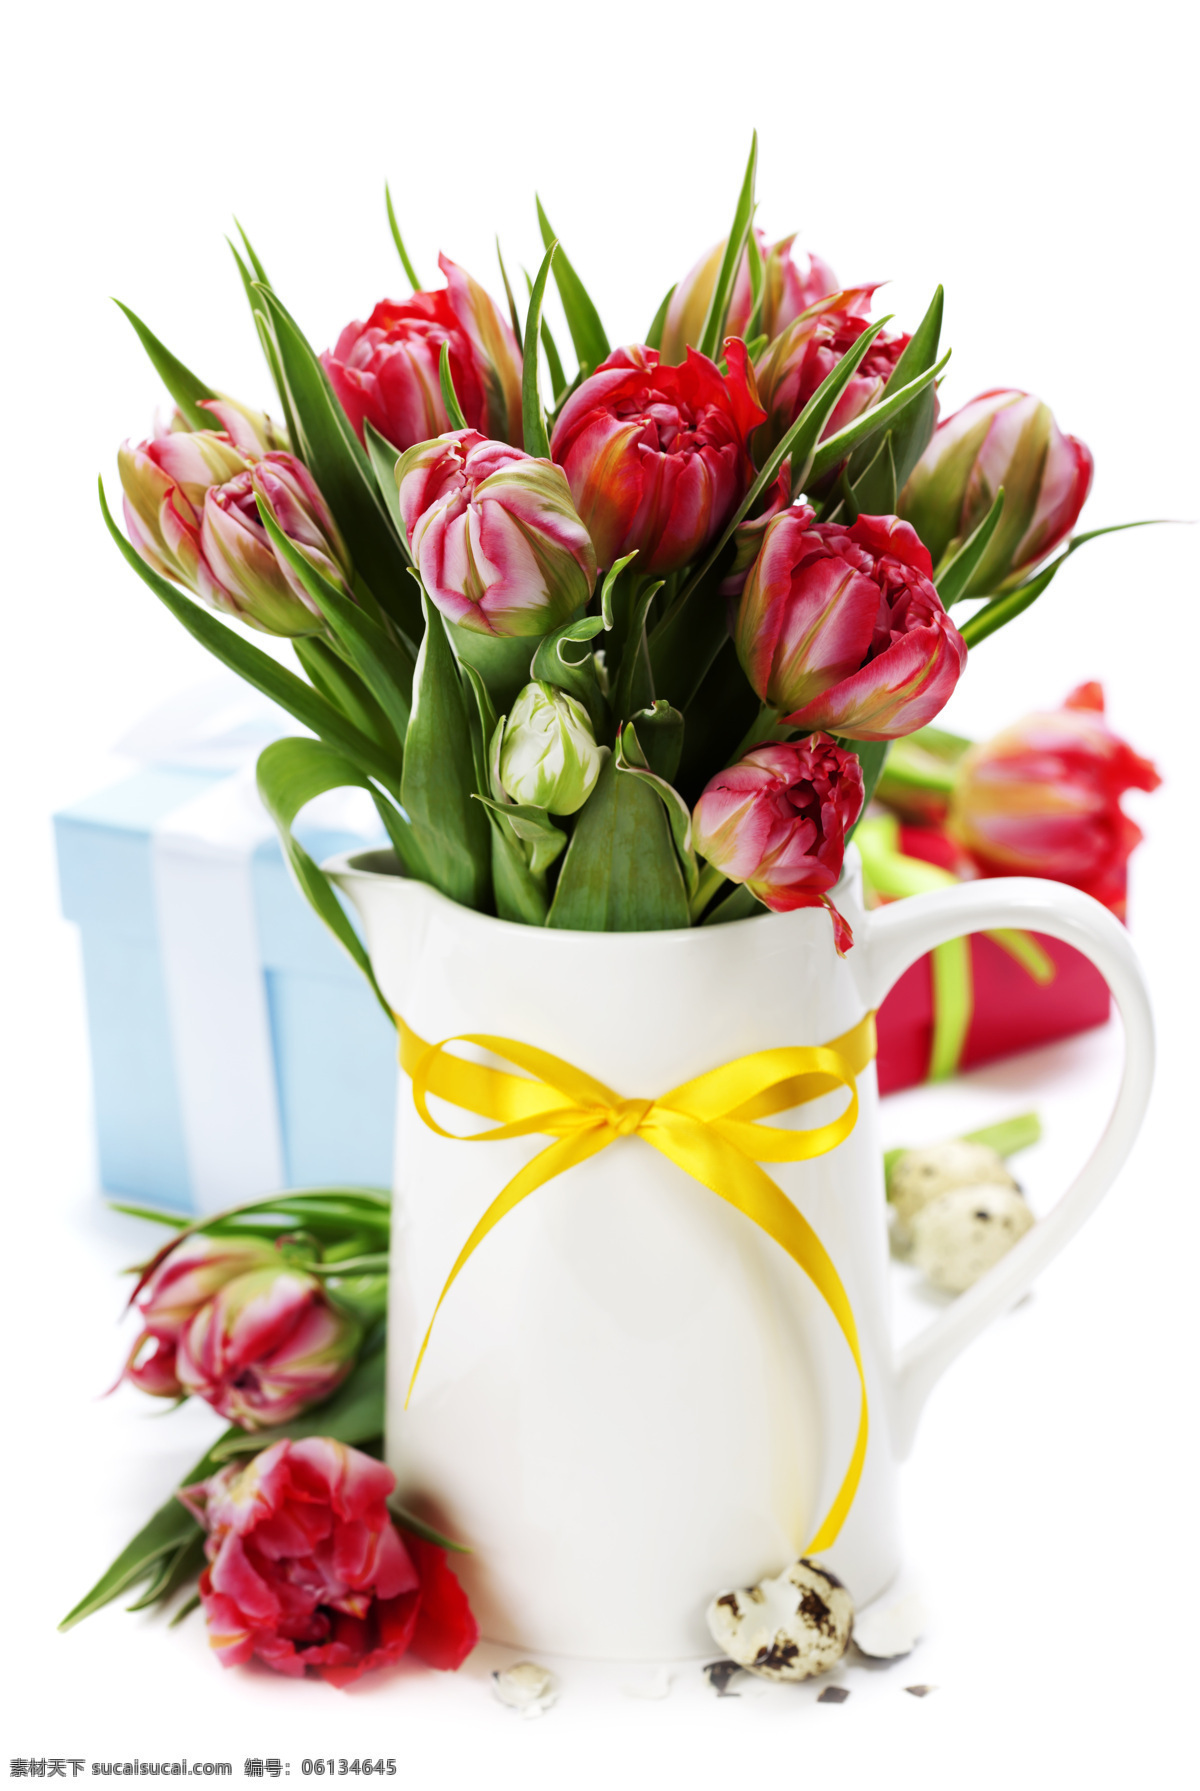 美丽 花盆 鸟蛋 郁金香花朵 复活节礼物 花瓶 春天花朵 美丽鲜花 花卉 复活节鲜花 花草树木 生物世界